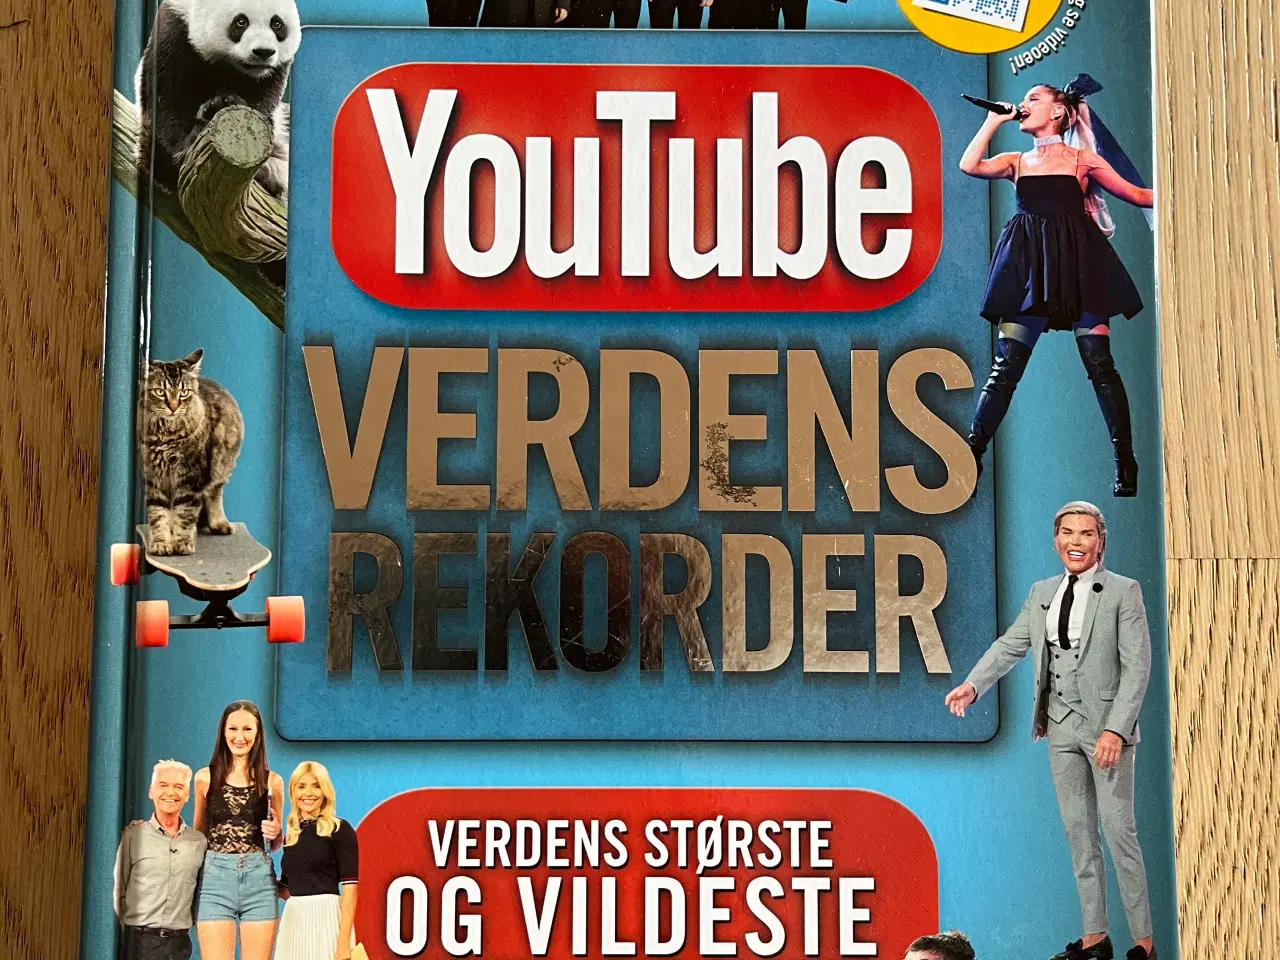 Billede 1 - YouTube verdens rekorder